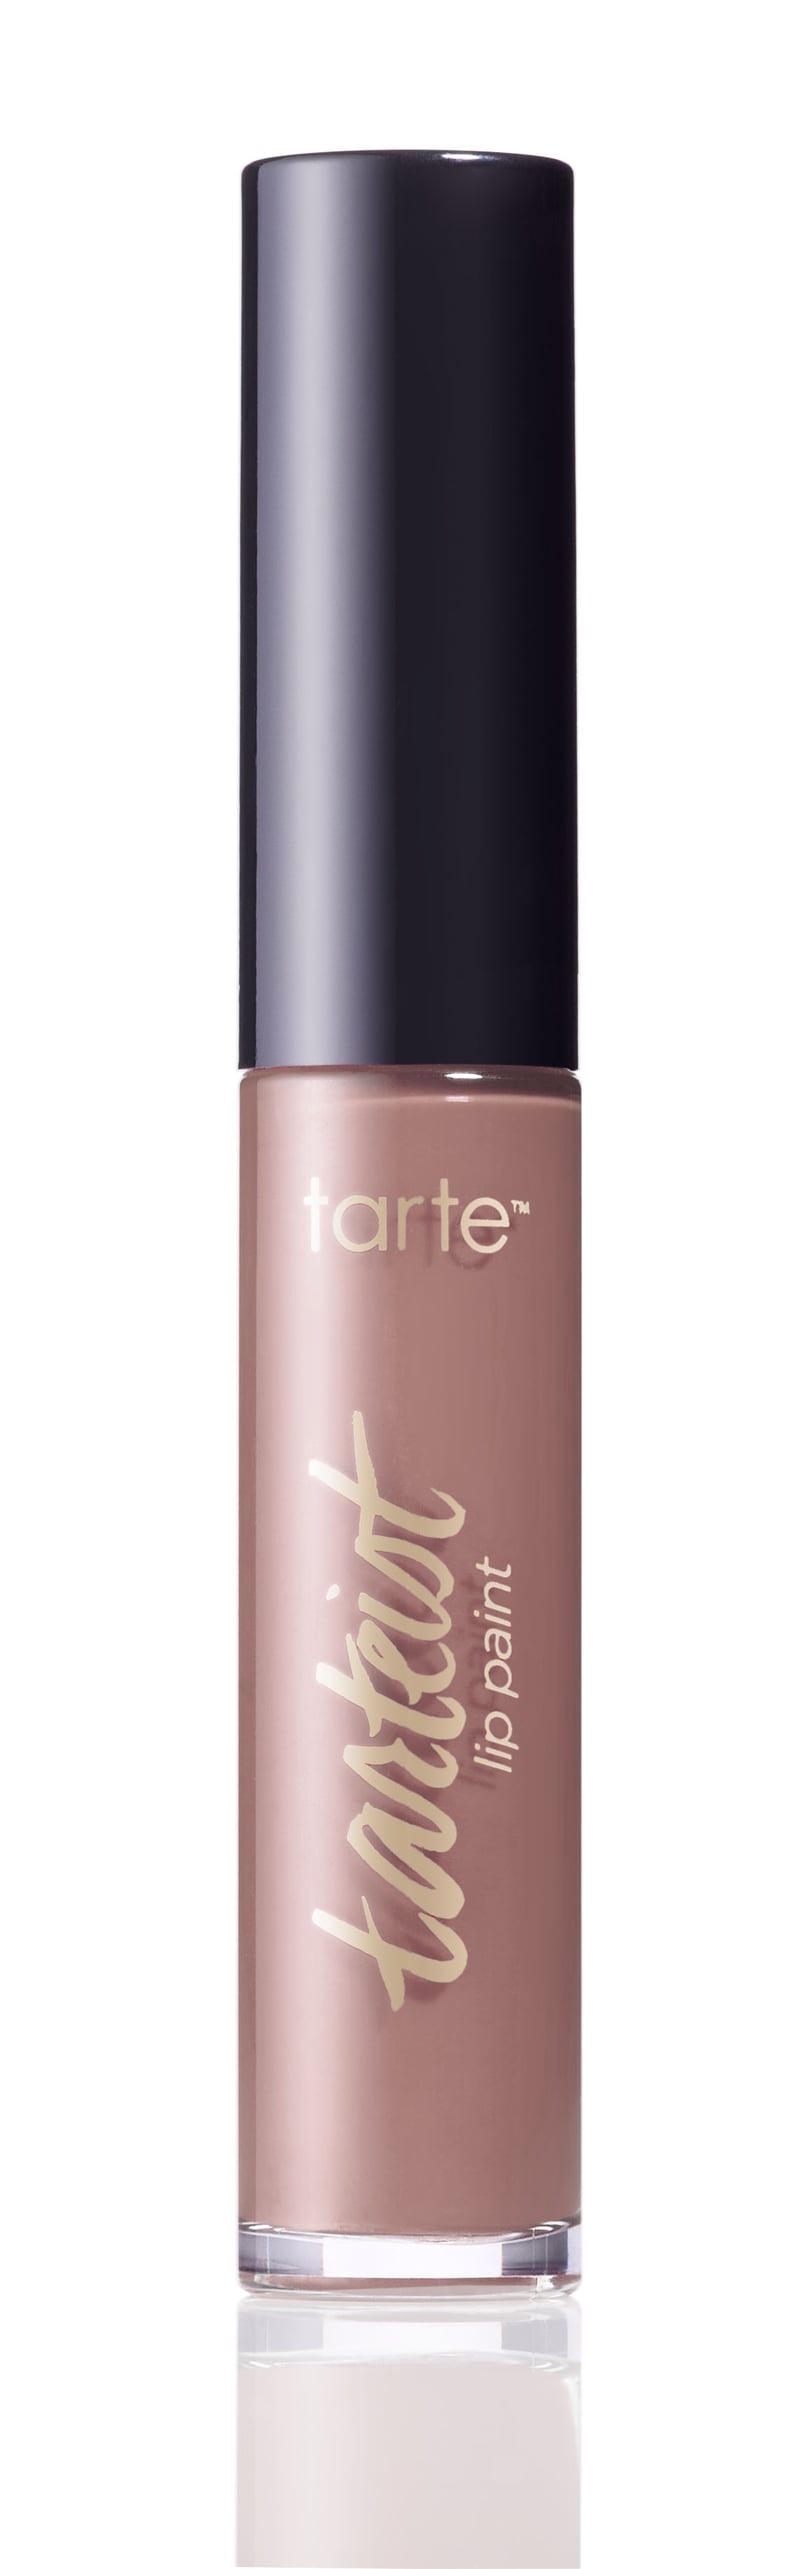 Tarte Cosmetics Tarteist Lip Paint in Namaste